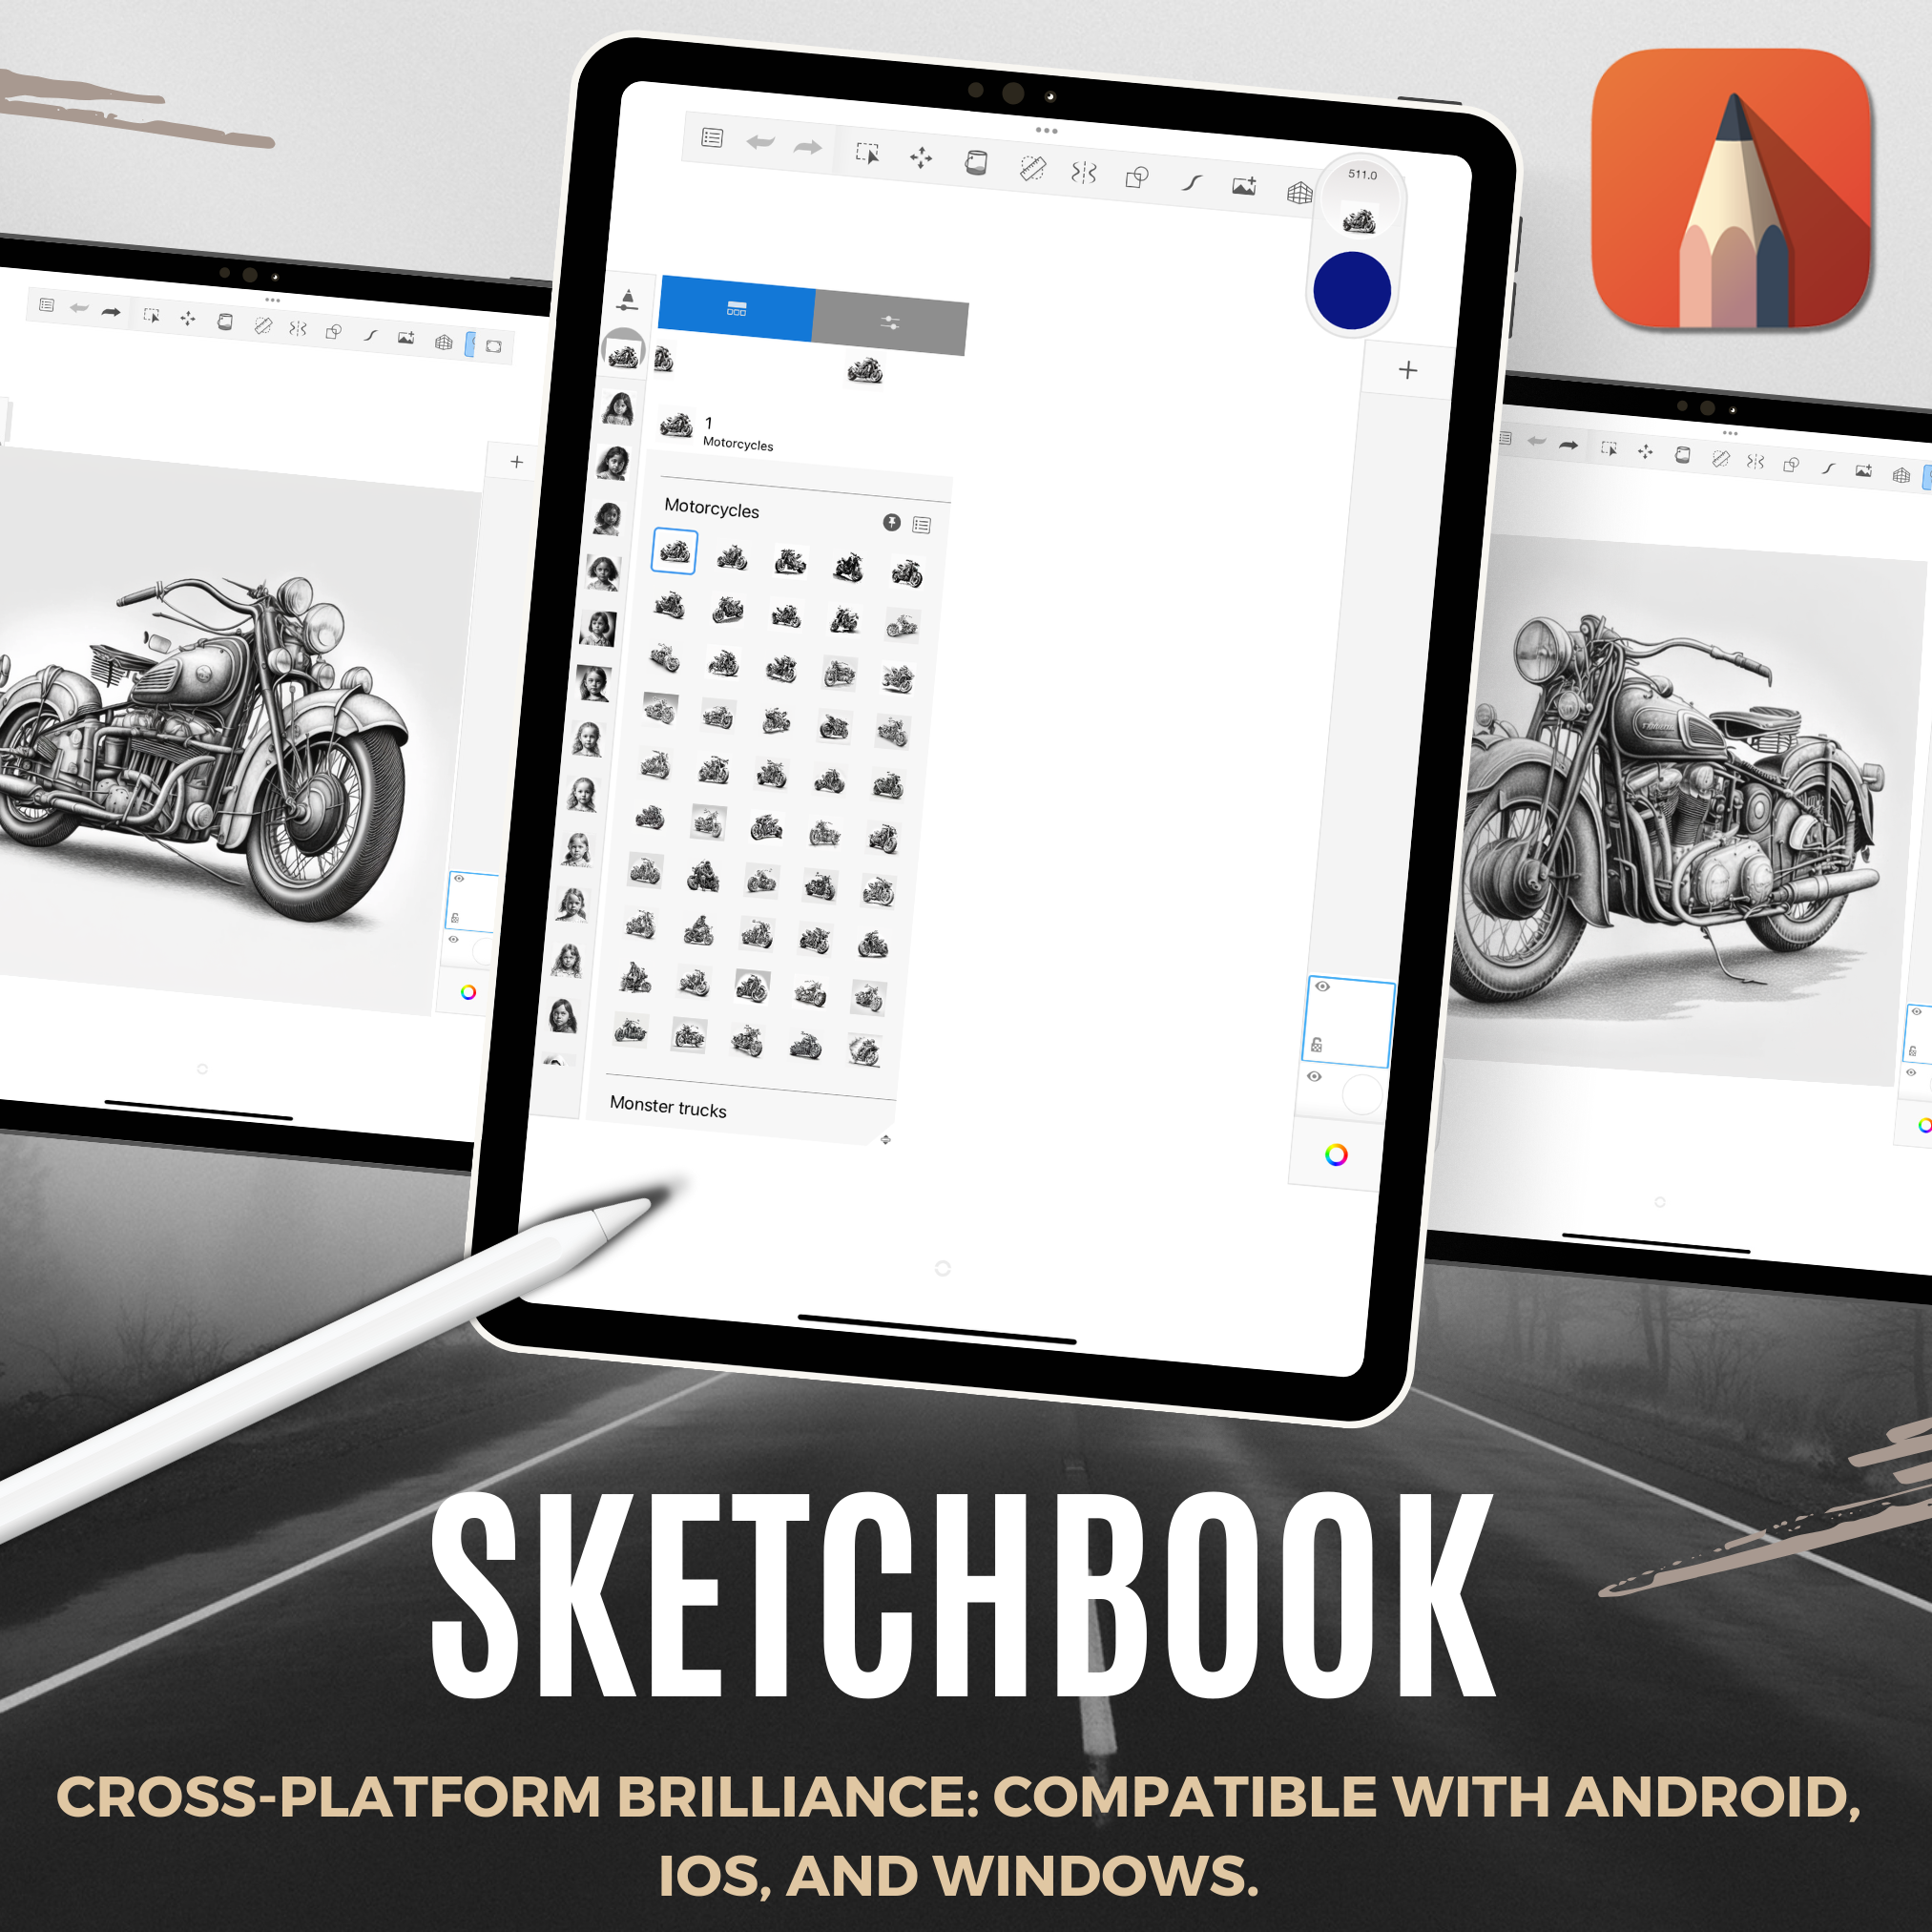 Colección de diseño digital de motos: 50 imágenes de Procreate y Sketchbook